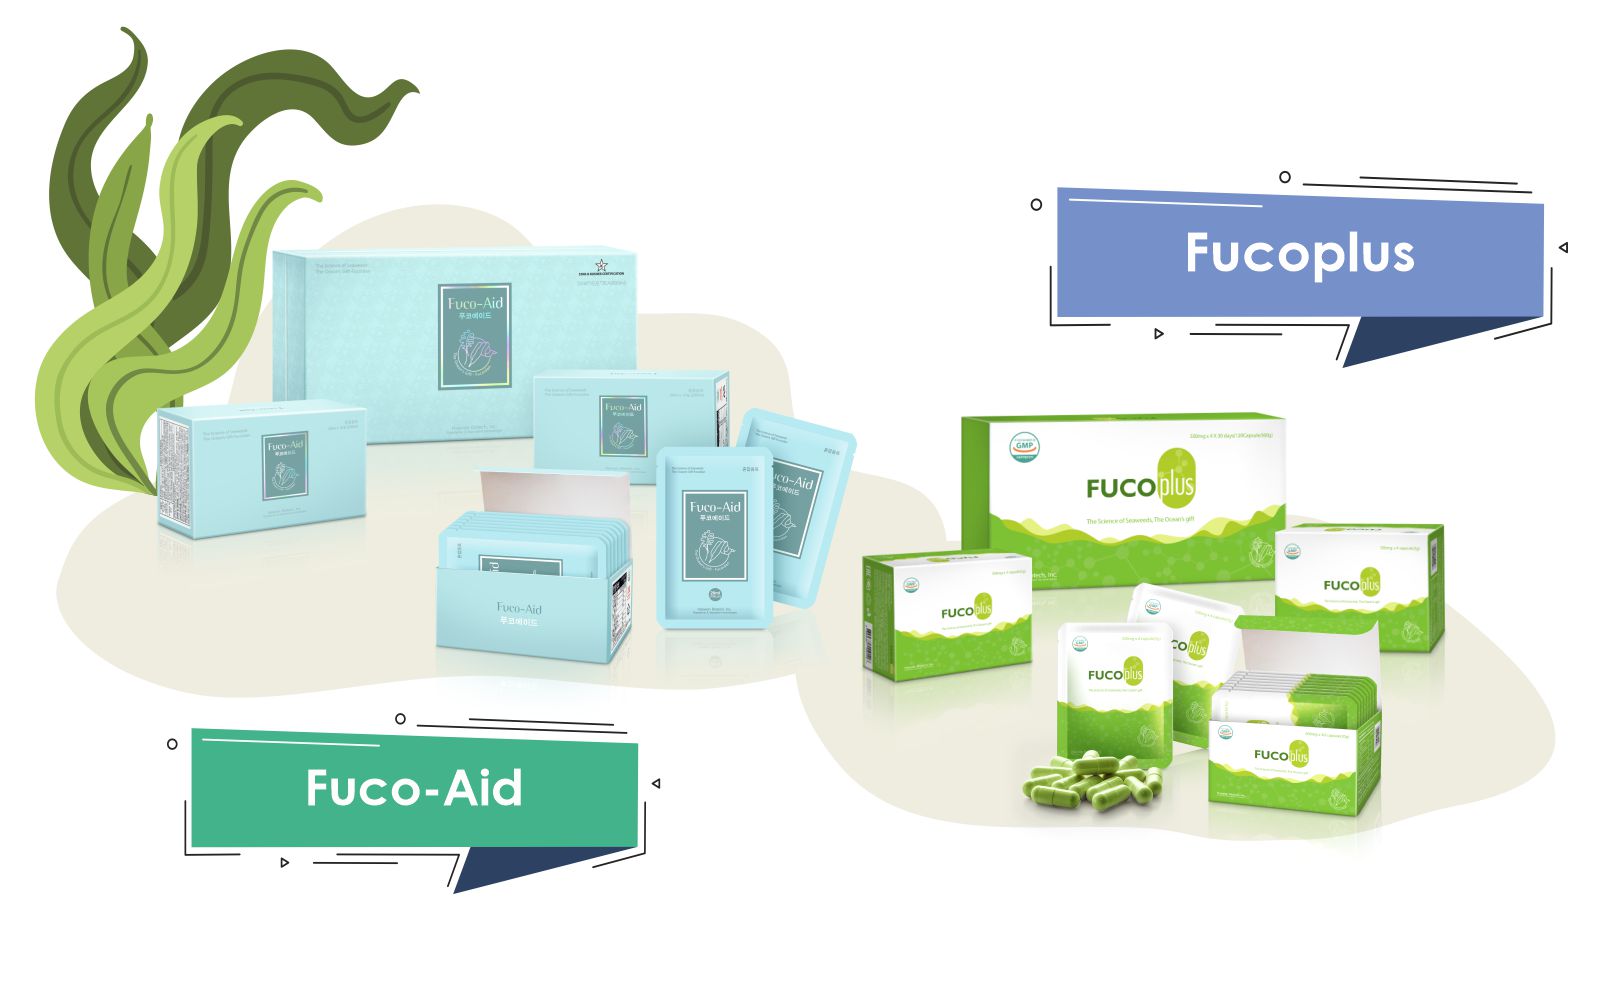 Продукты содержащие фукоидан Fuco-Aid, Fucoplus